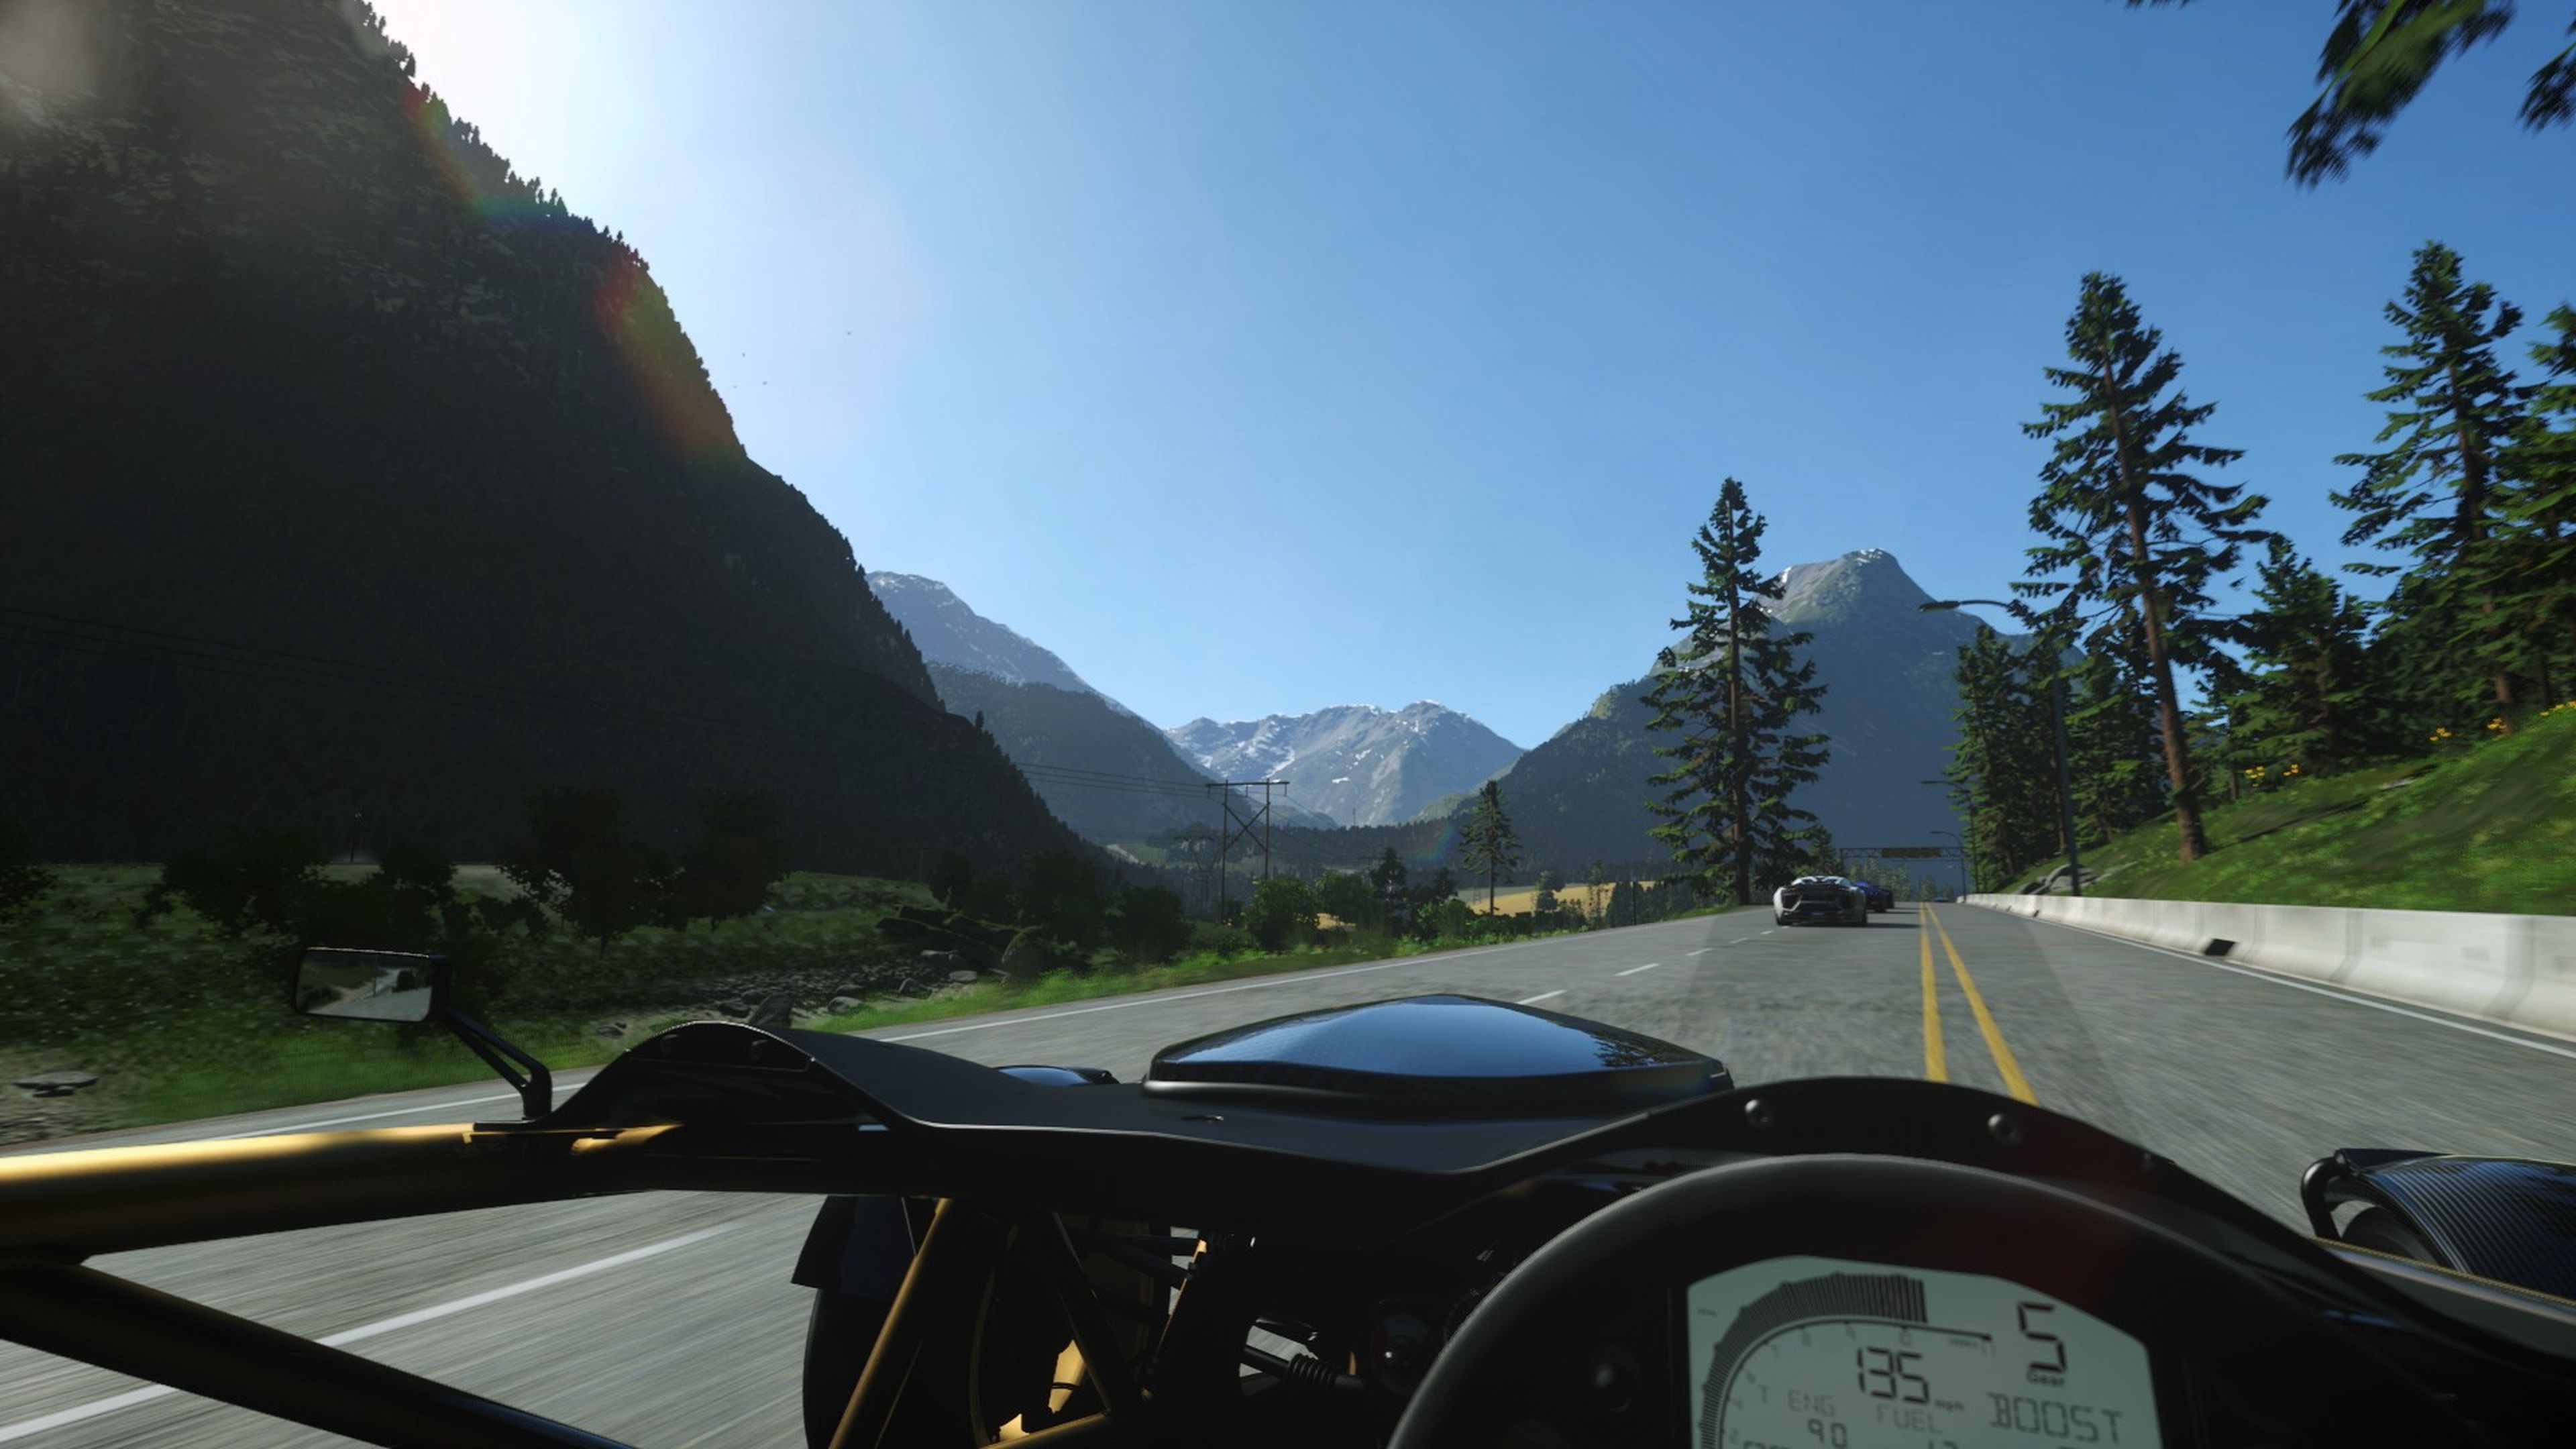 Driveclub VR ofrecerá opciones interesantes, como permitir graduar la altura desde la que queremos conducir.